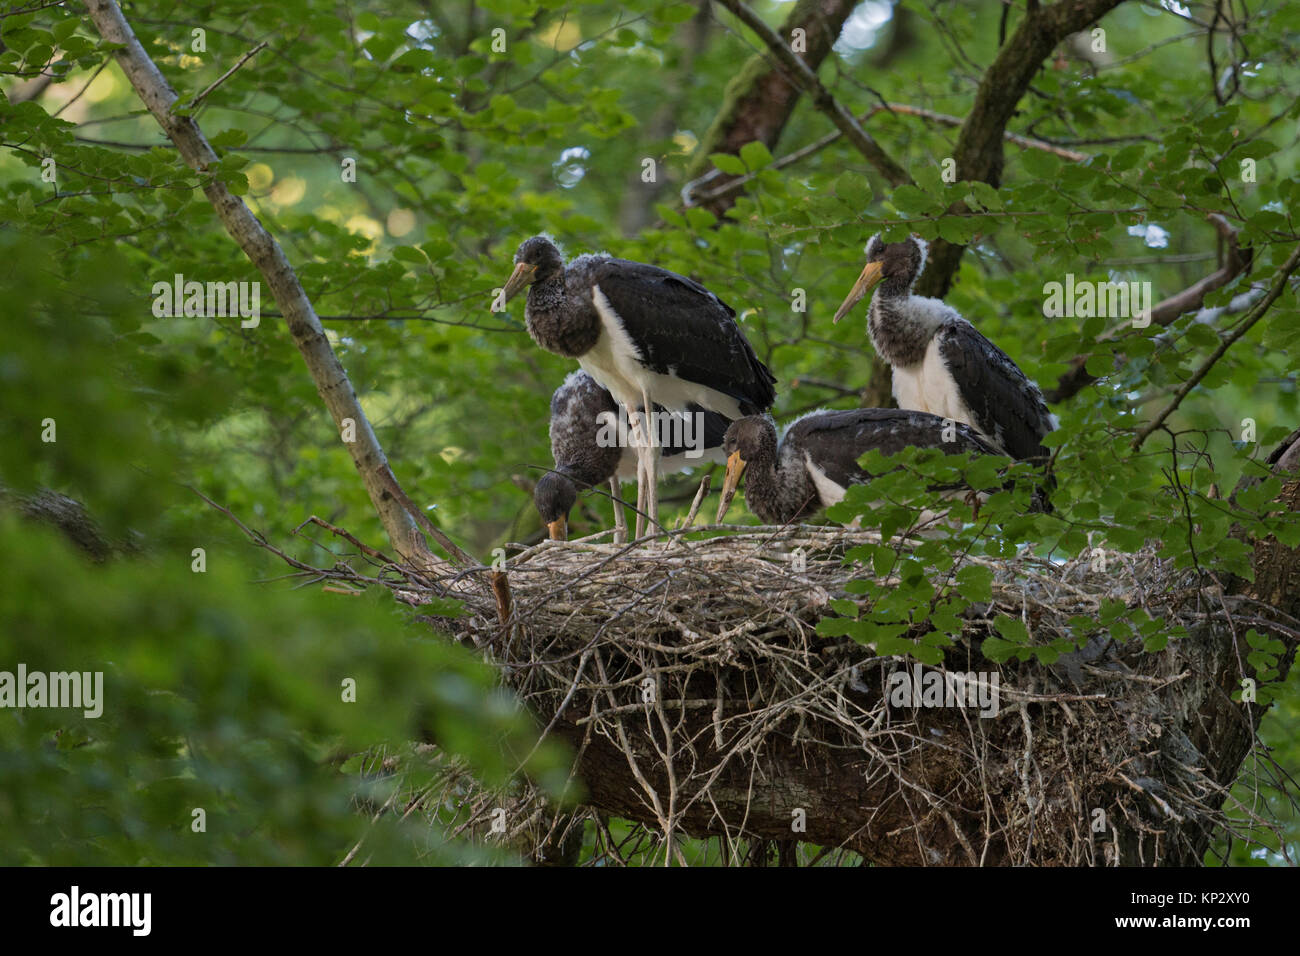 Cigogne noire / Schwarzstorch ( Ciconia nigra ), les jeunes oisillons dans leur nid, caché dans un arbre d'un hêtre, presque véritable, de la faune, de l'Europe. Banque D'Images